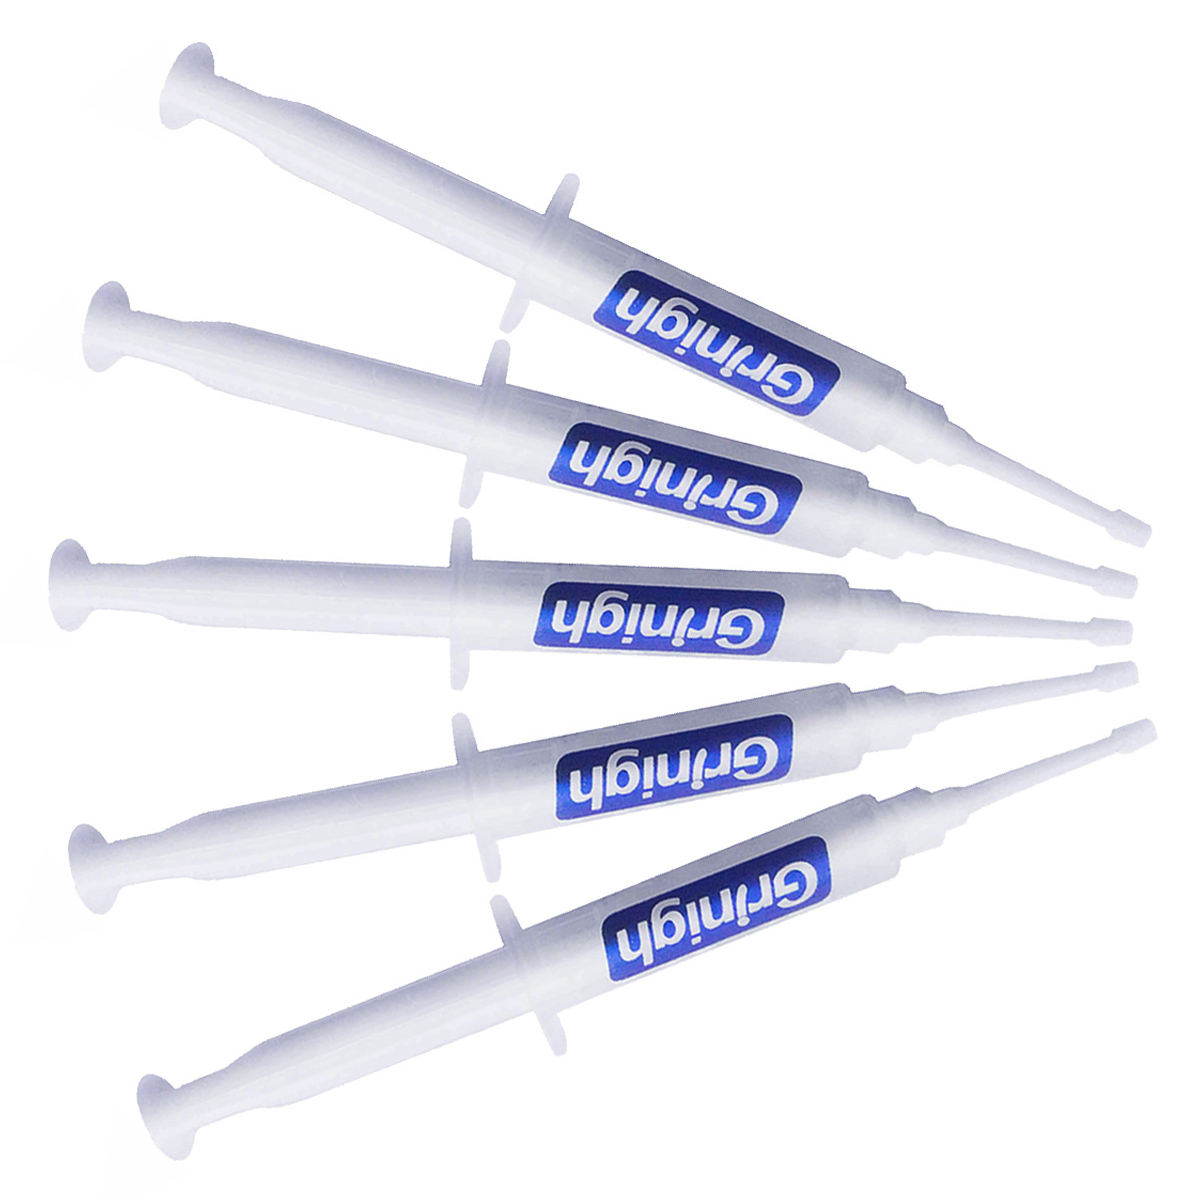 Grin365 Startseite Teeth Whitening Gel mit wiederverwendbarer Spritze Tipps - Refill für Kit mit 33 Behandlungen für Klinische regelmäßige Stärke-Gel(44% Carbamidperoxyd)